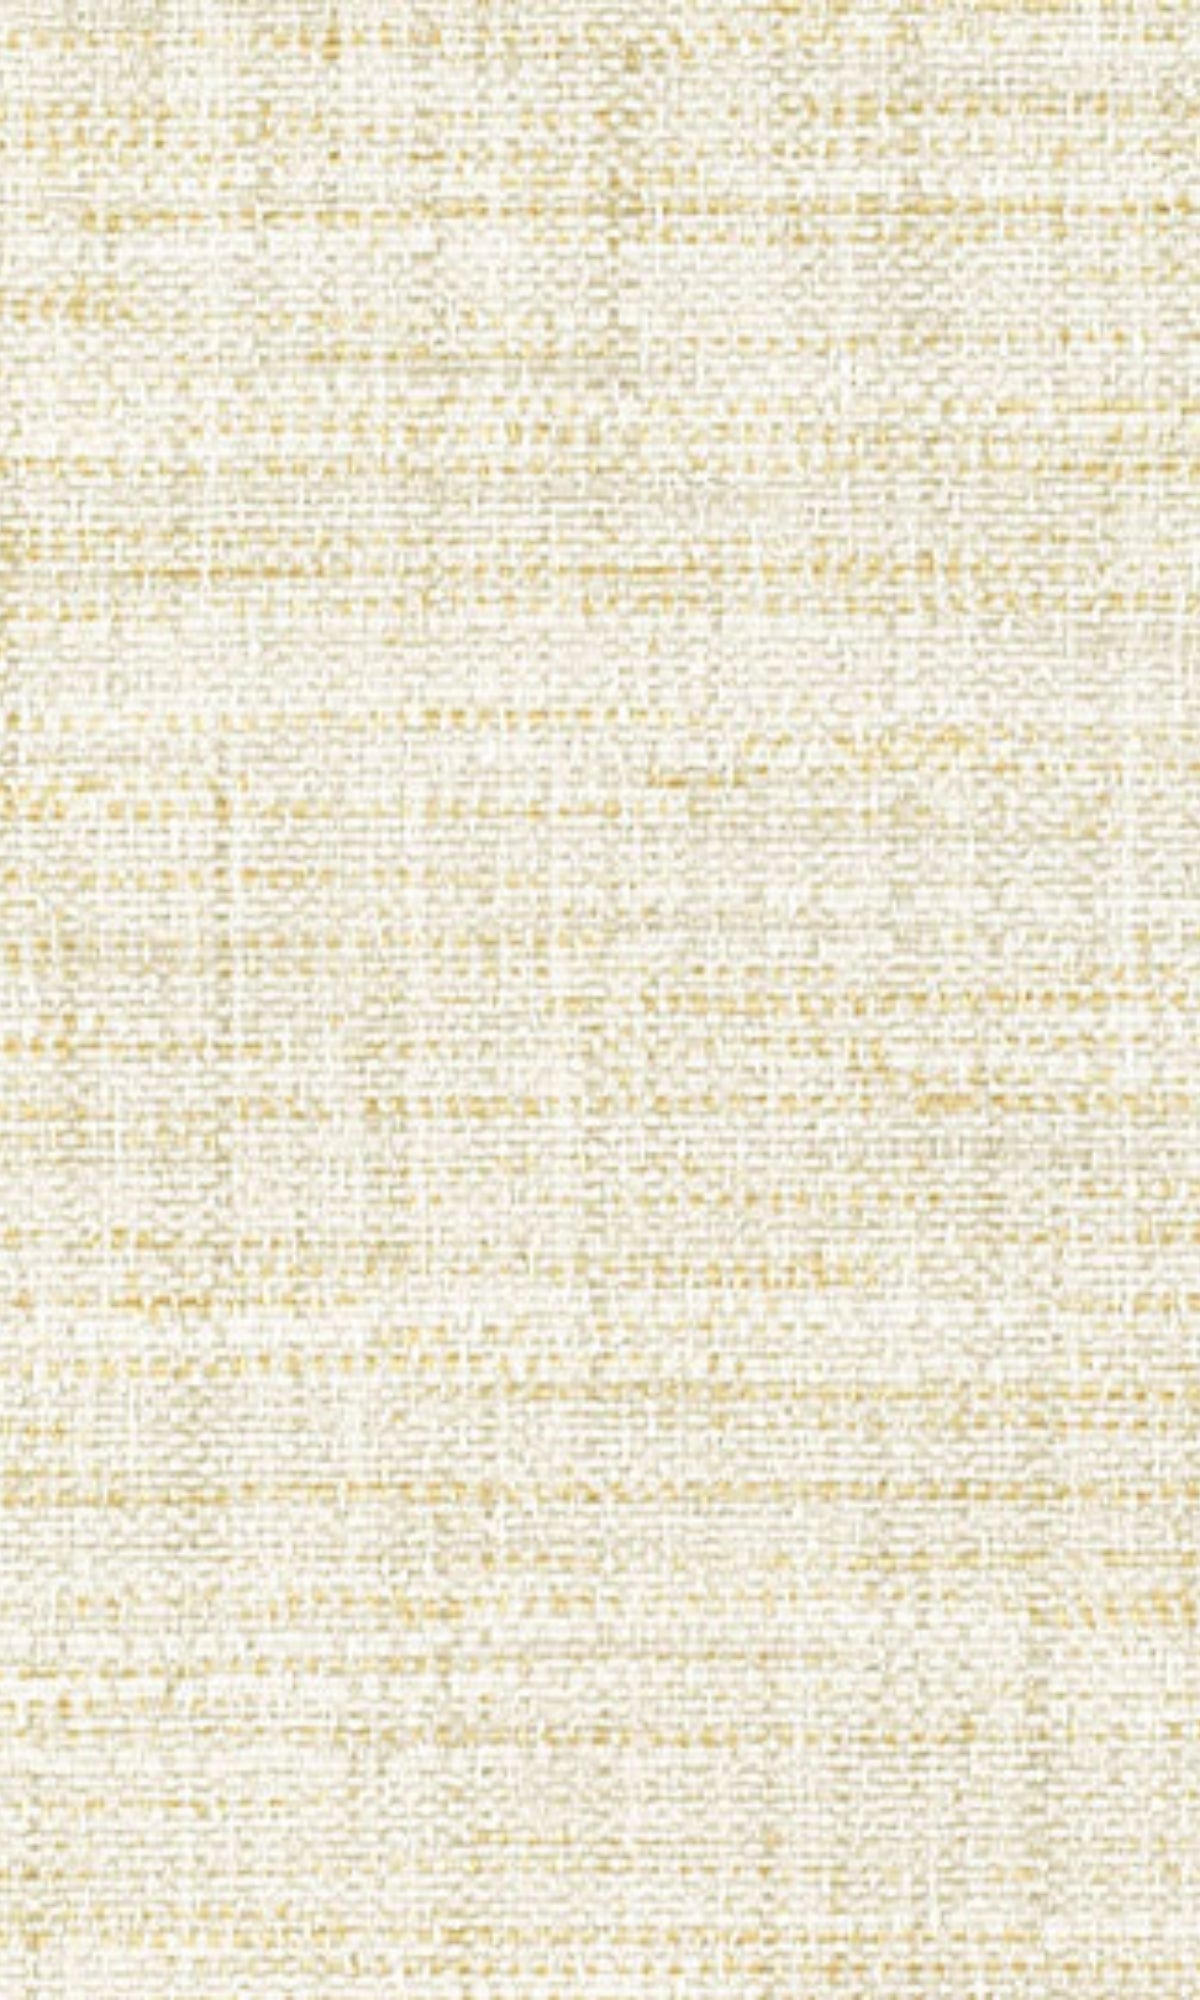 Ivory Linen Like Commercial Wallpaper C7542